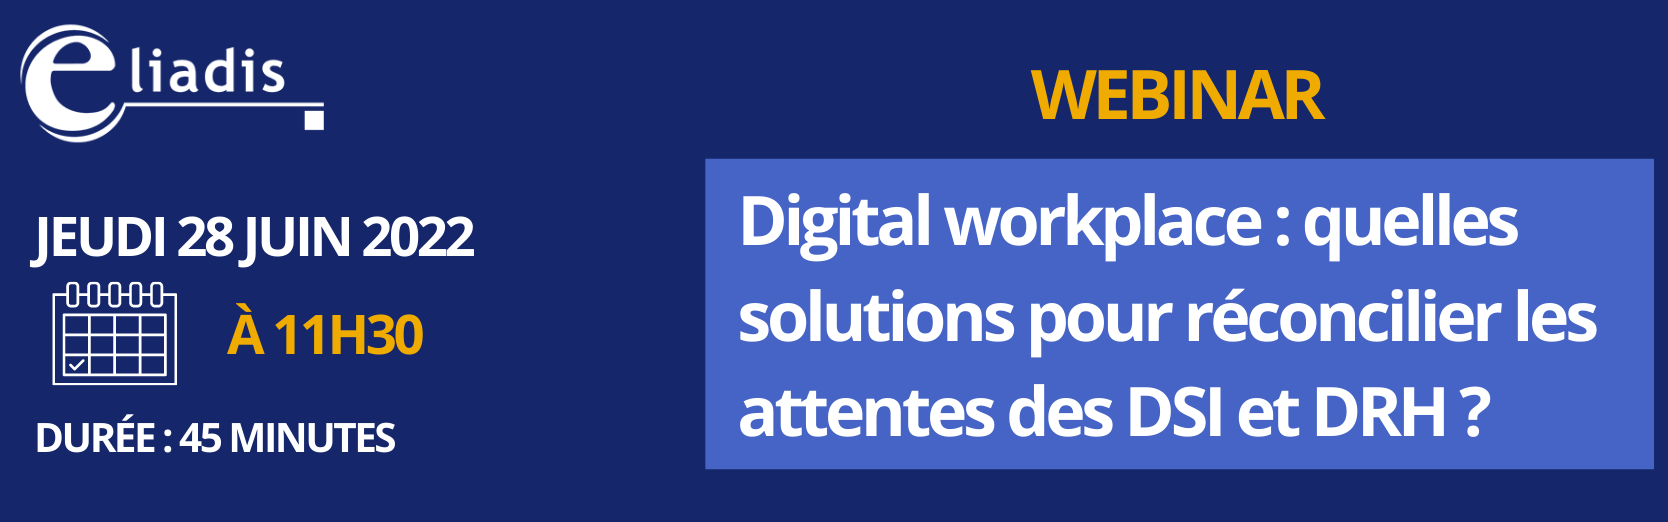 Digital workplace : quelles solutions pour réconcilier les attentes des DSI et DRH ?